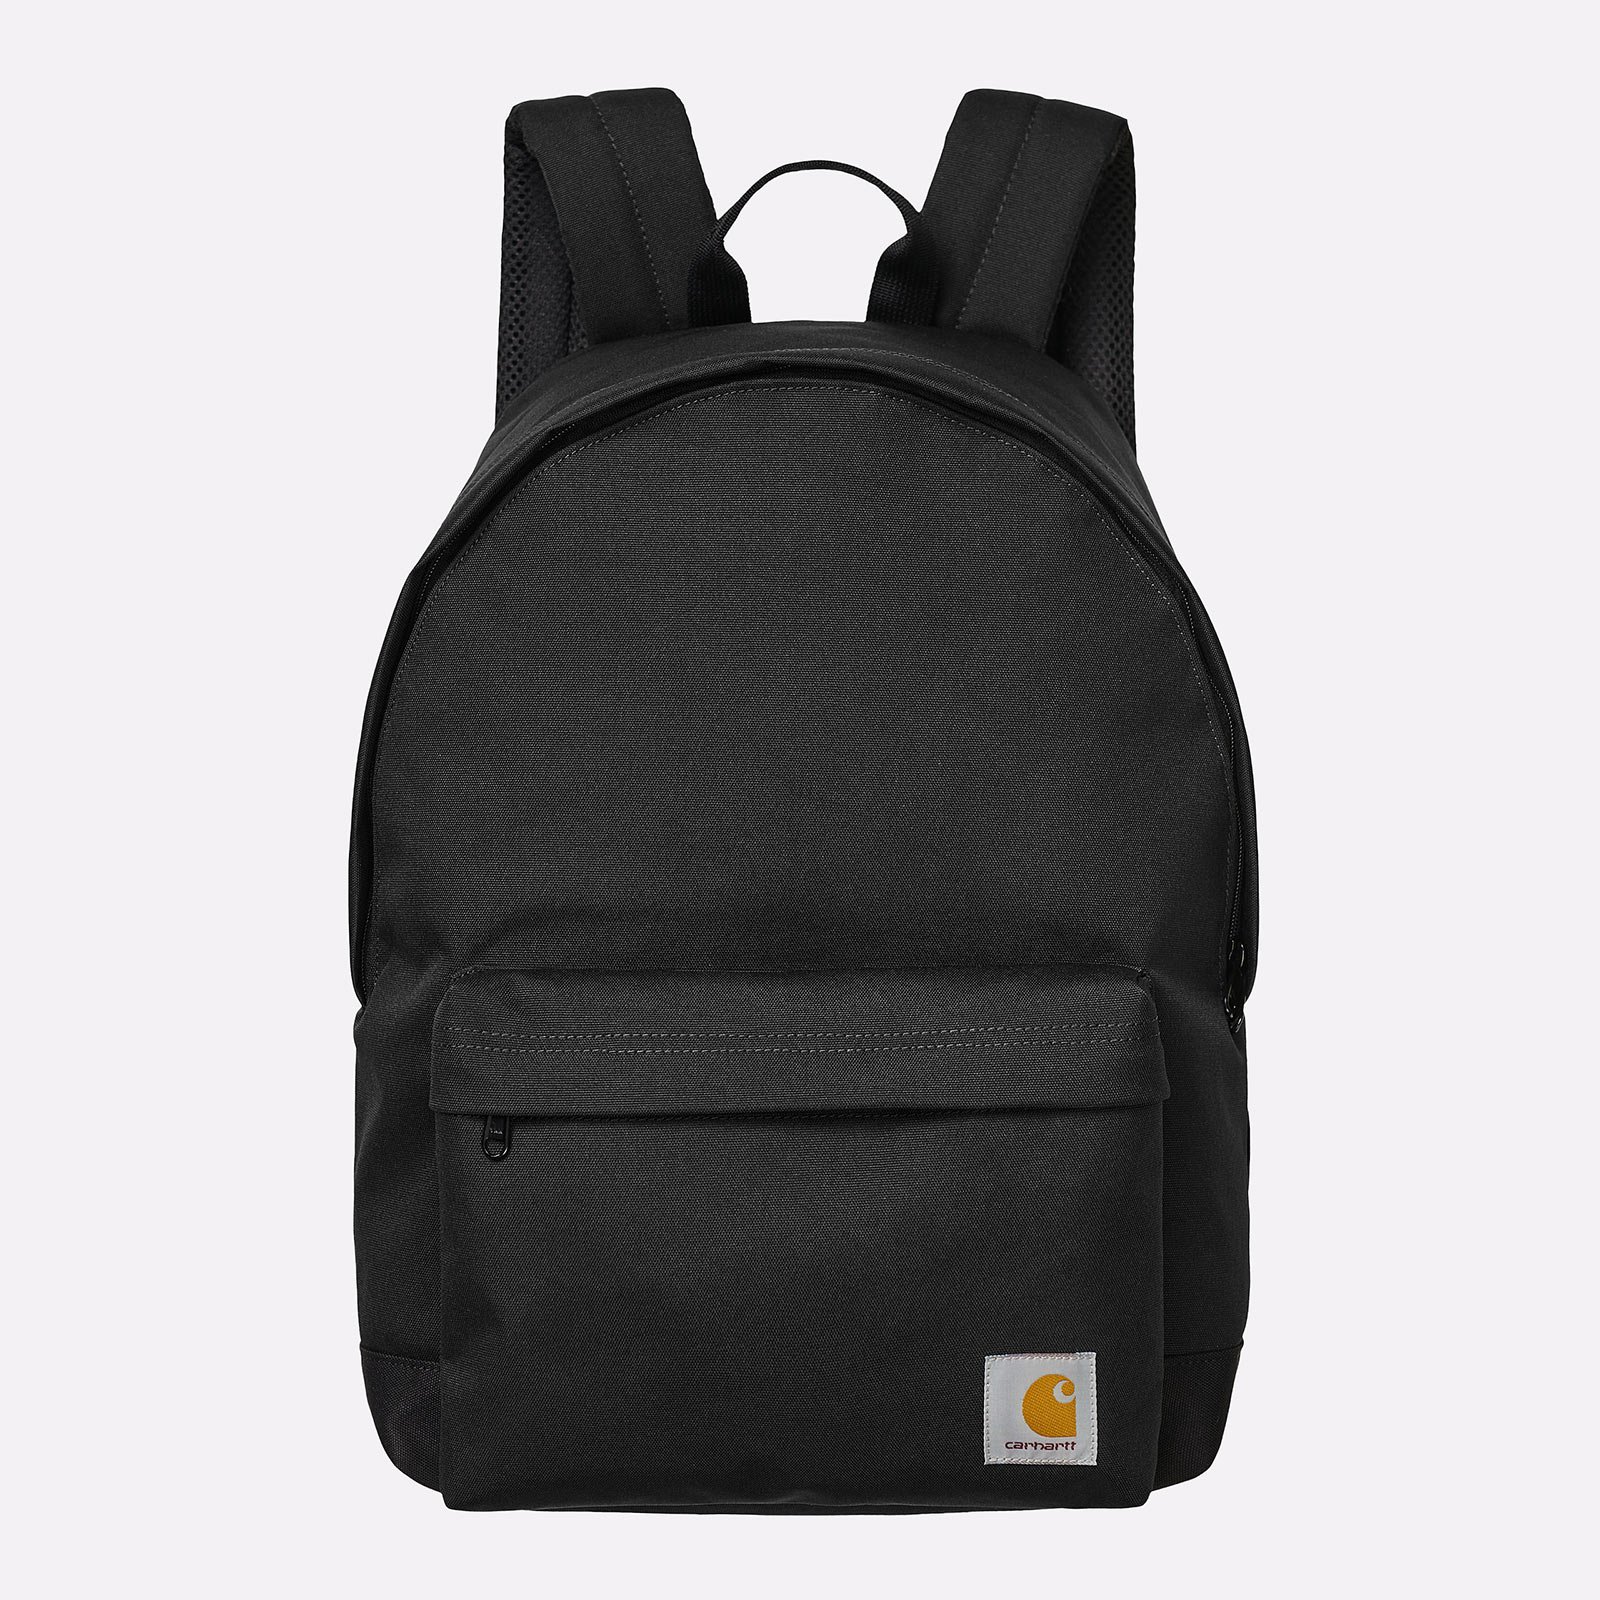 рюкзак Carhartt WIP Jake Backpack  (I031581-black)  - цена, описание, фото 1